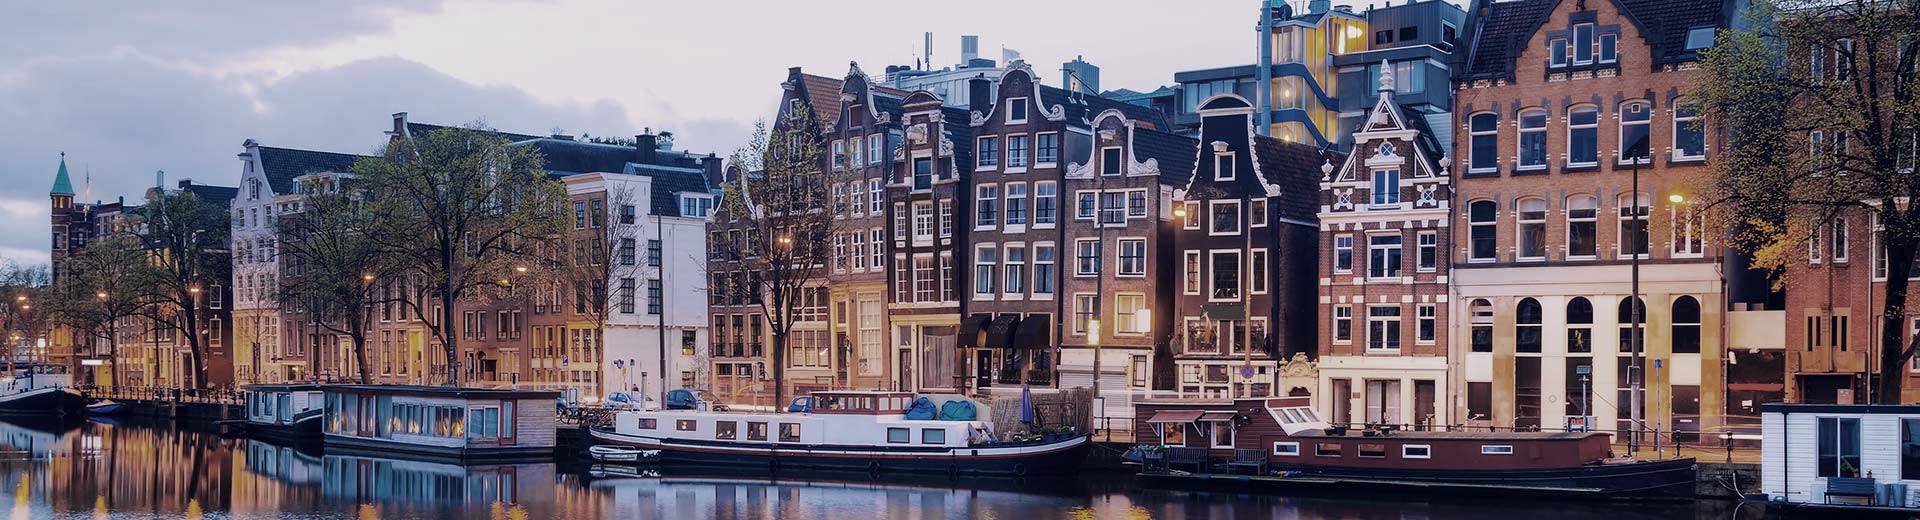 運河沿いにはハウスボートが停泊し、その後ろにはオランダ風の家々が並んでいる。